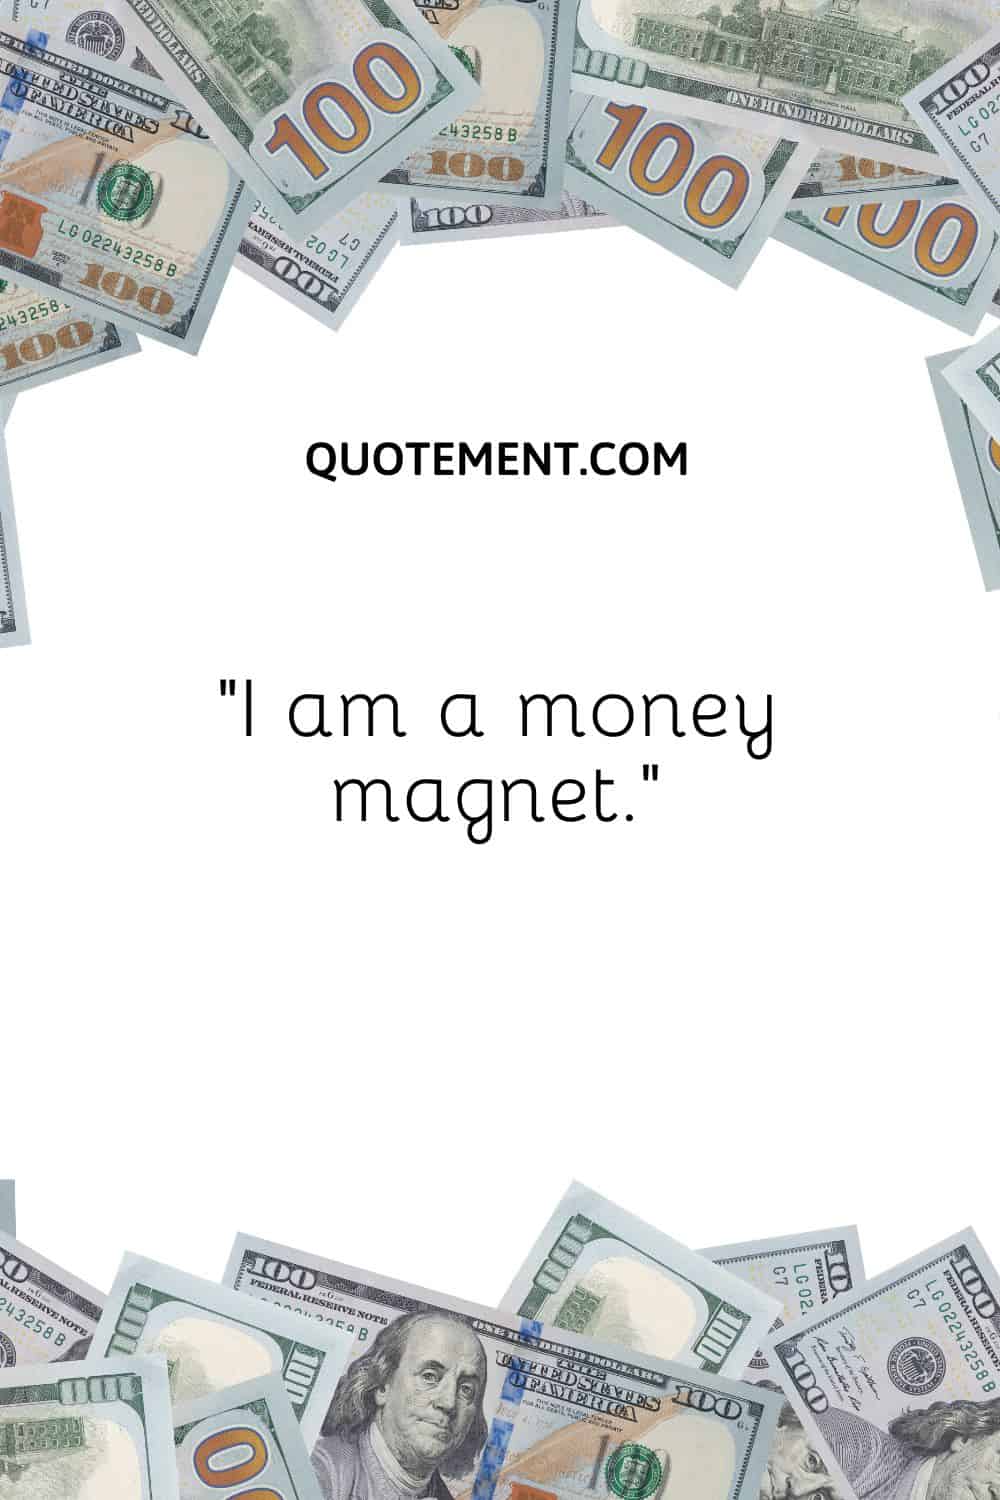 “I am a money magnet.”